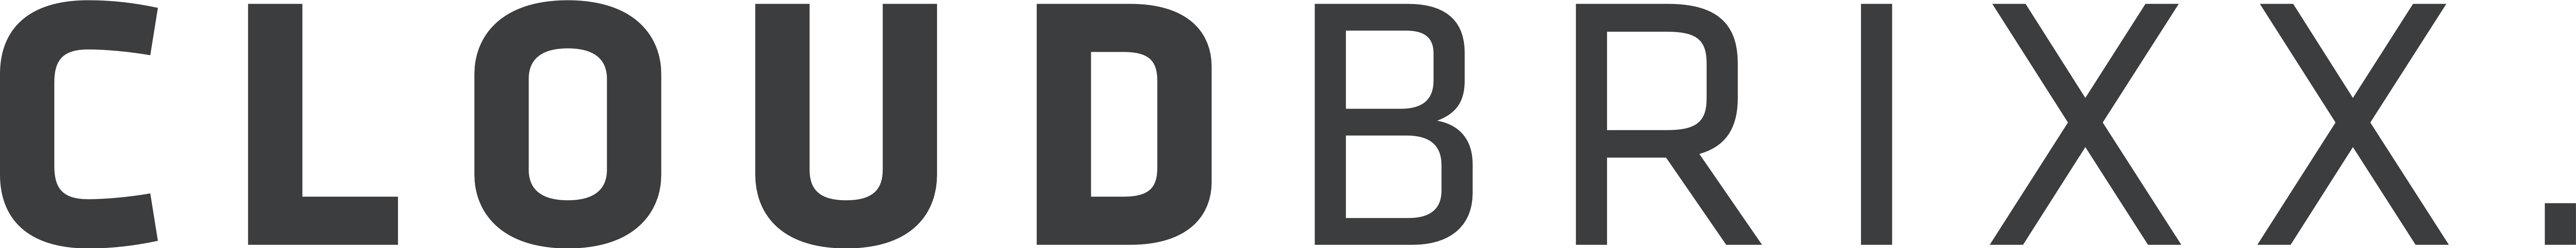 Cloudbrixx Header Logo Schriftzug